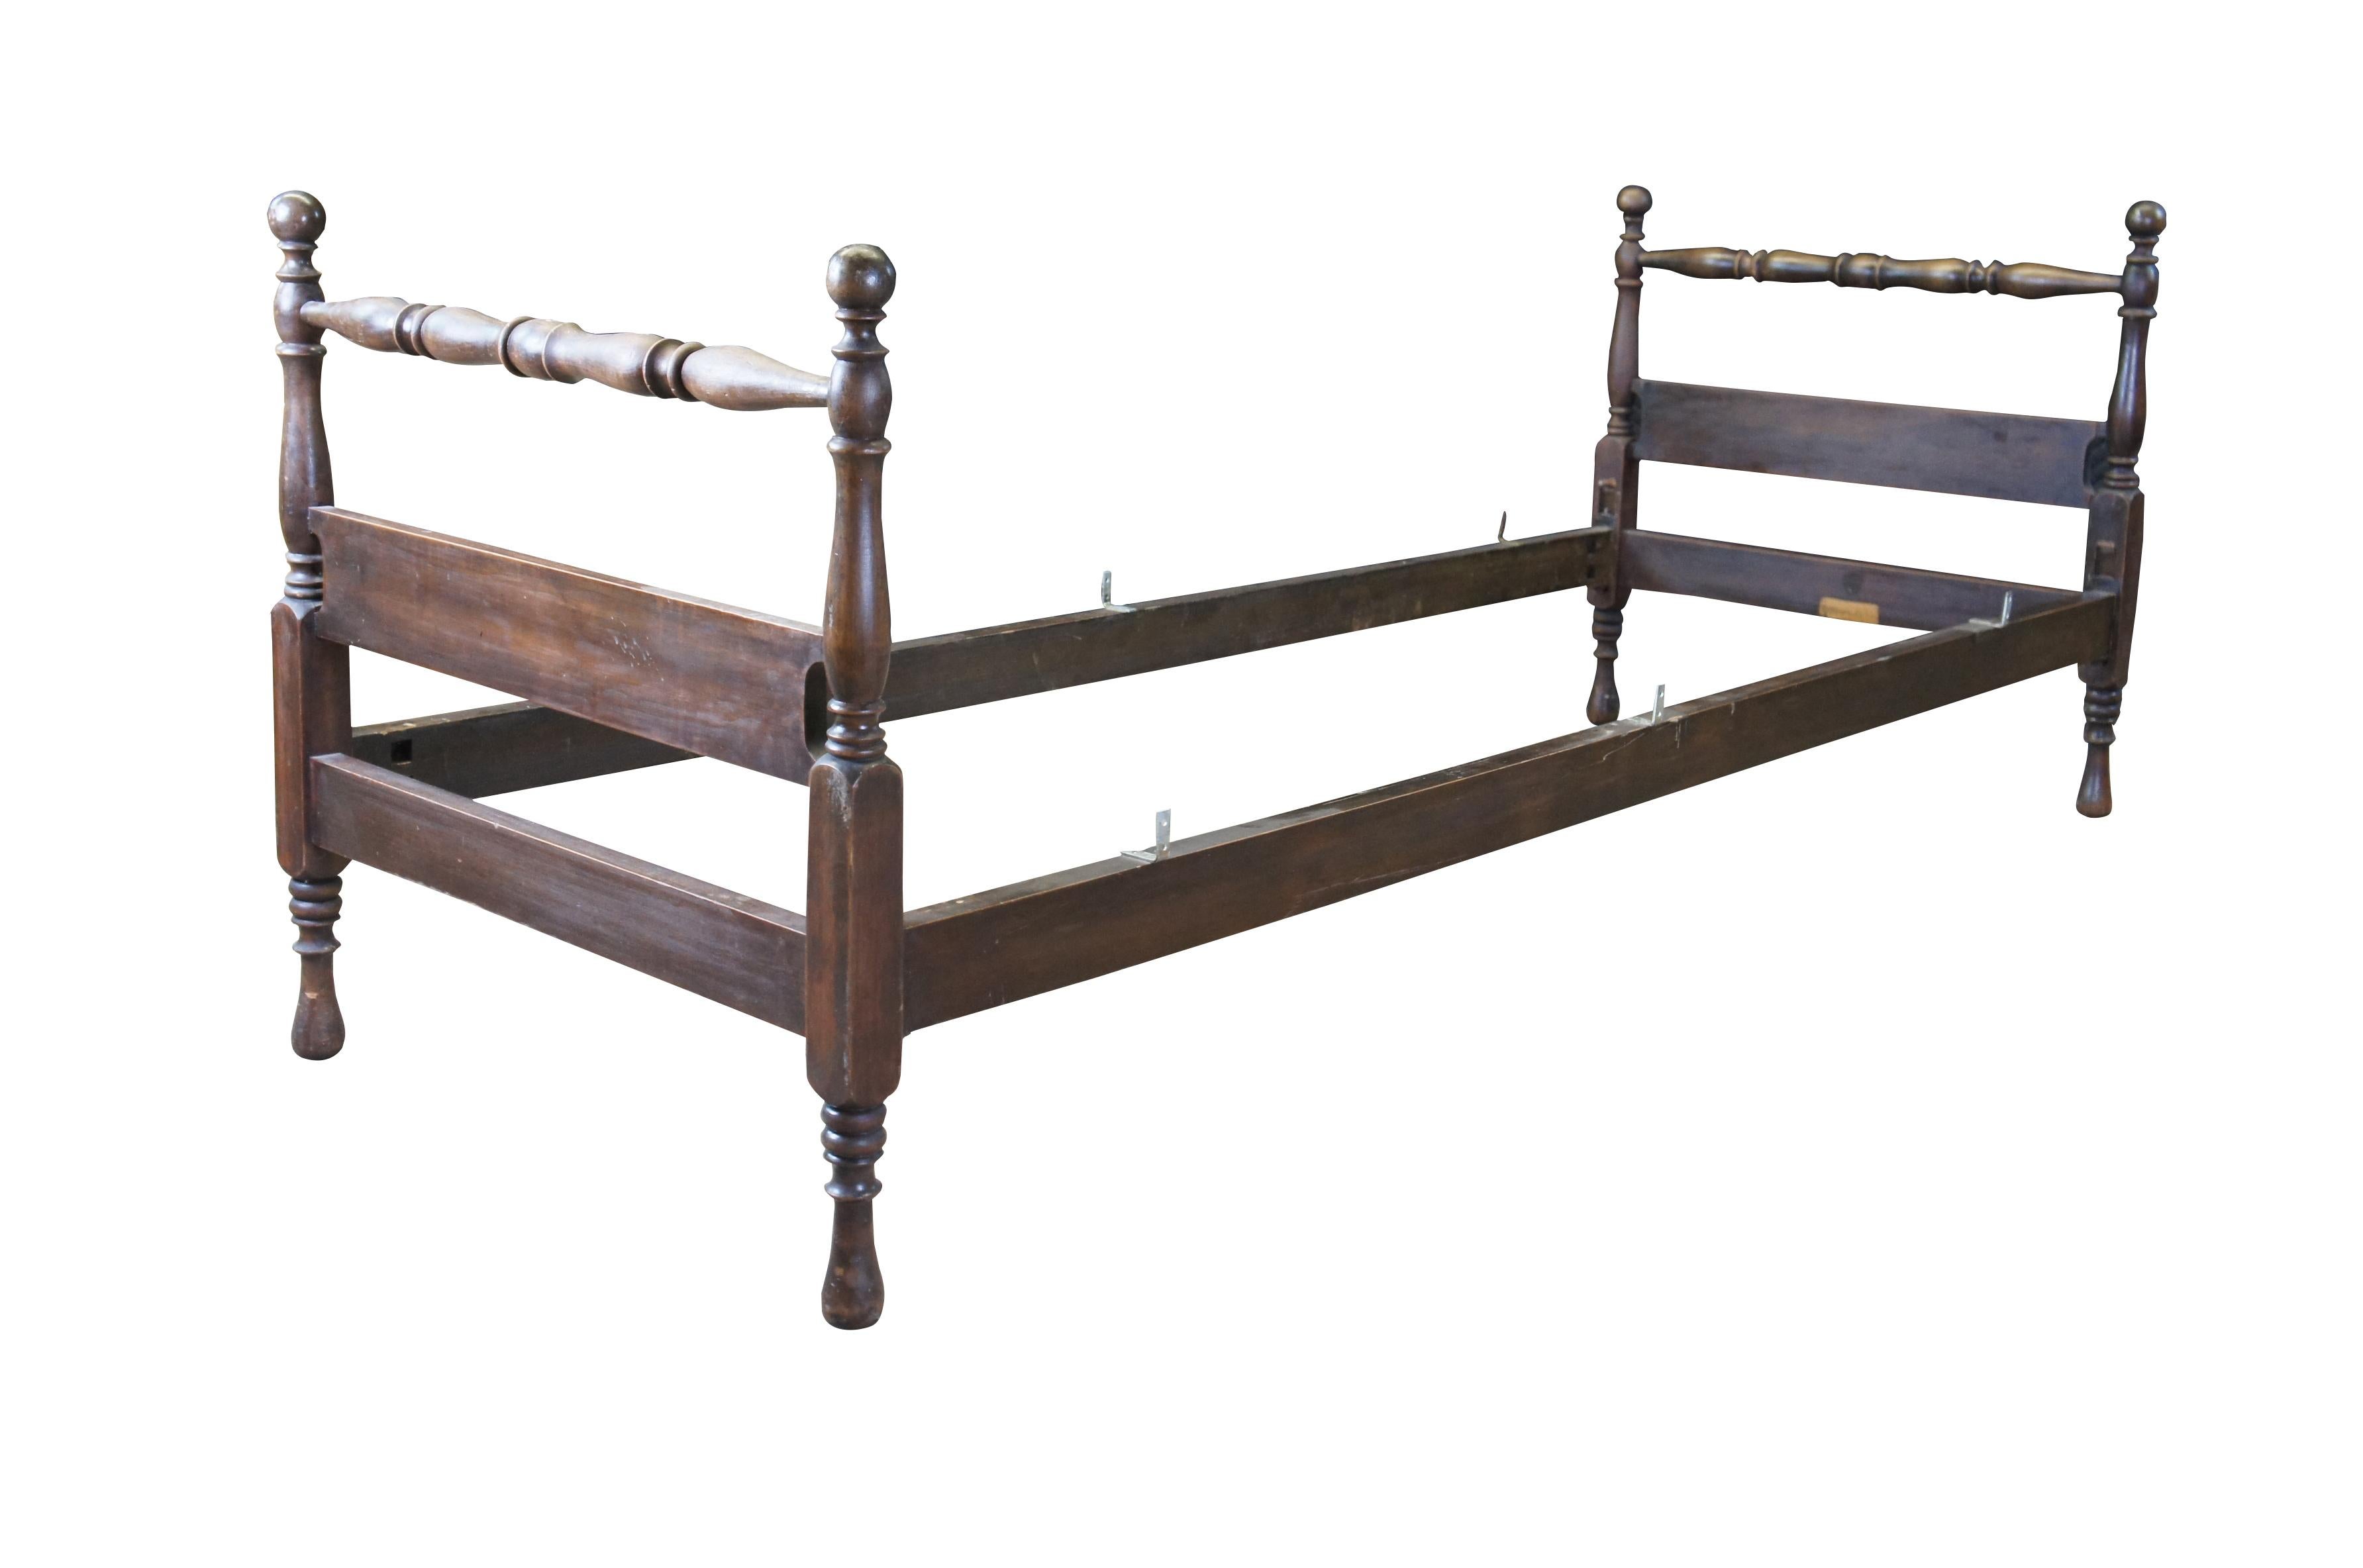 Ein antikes kleines Himmelbett im frühamerikanischen Stil.  Mit gedrehten Pfosten und Tupie-Füßen.

Abmessungen:
30